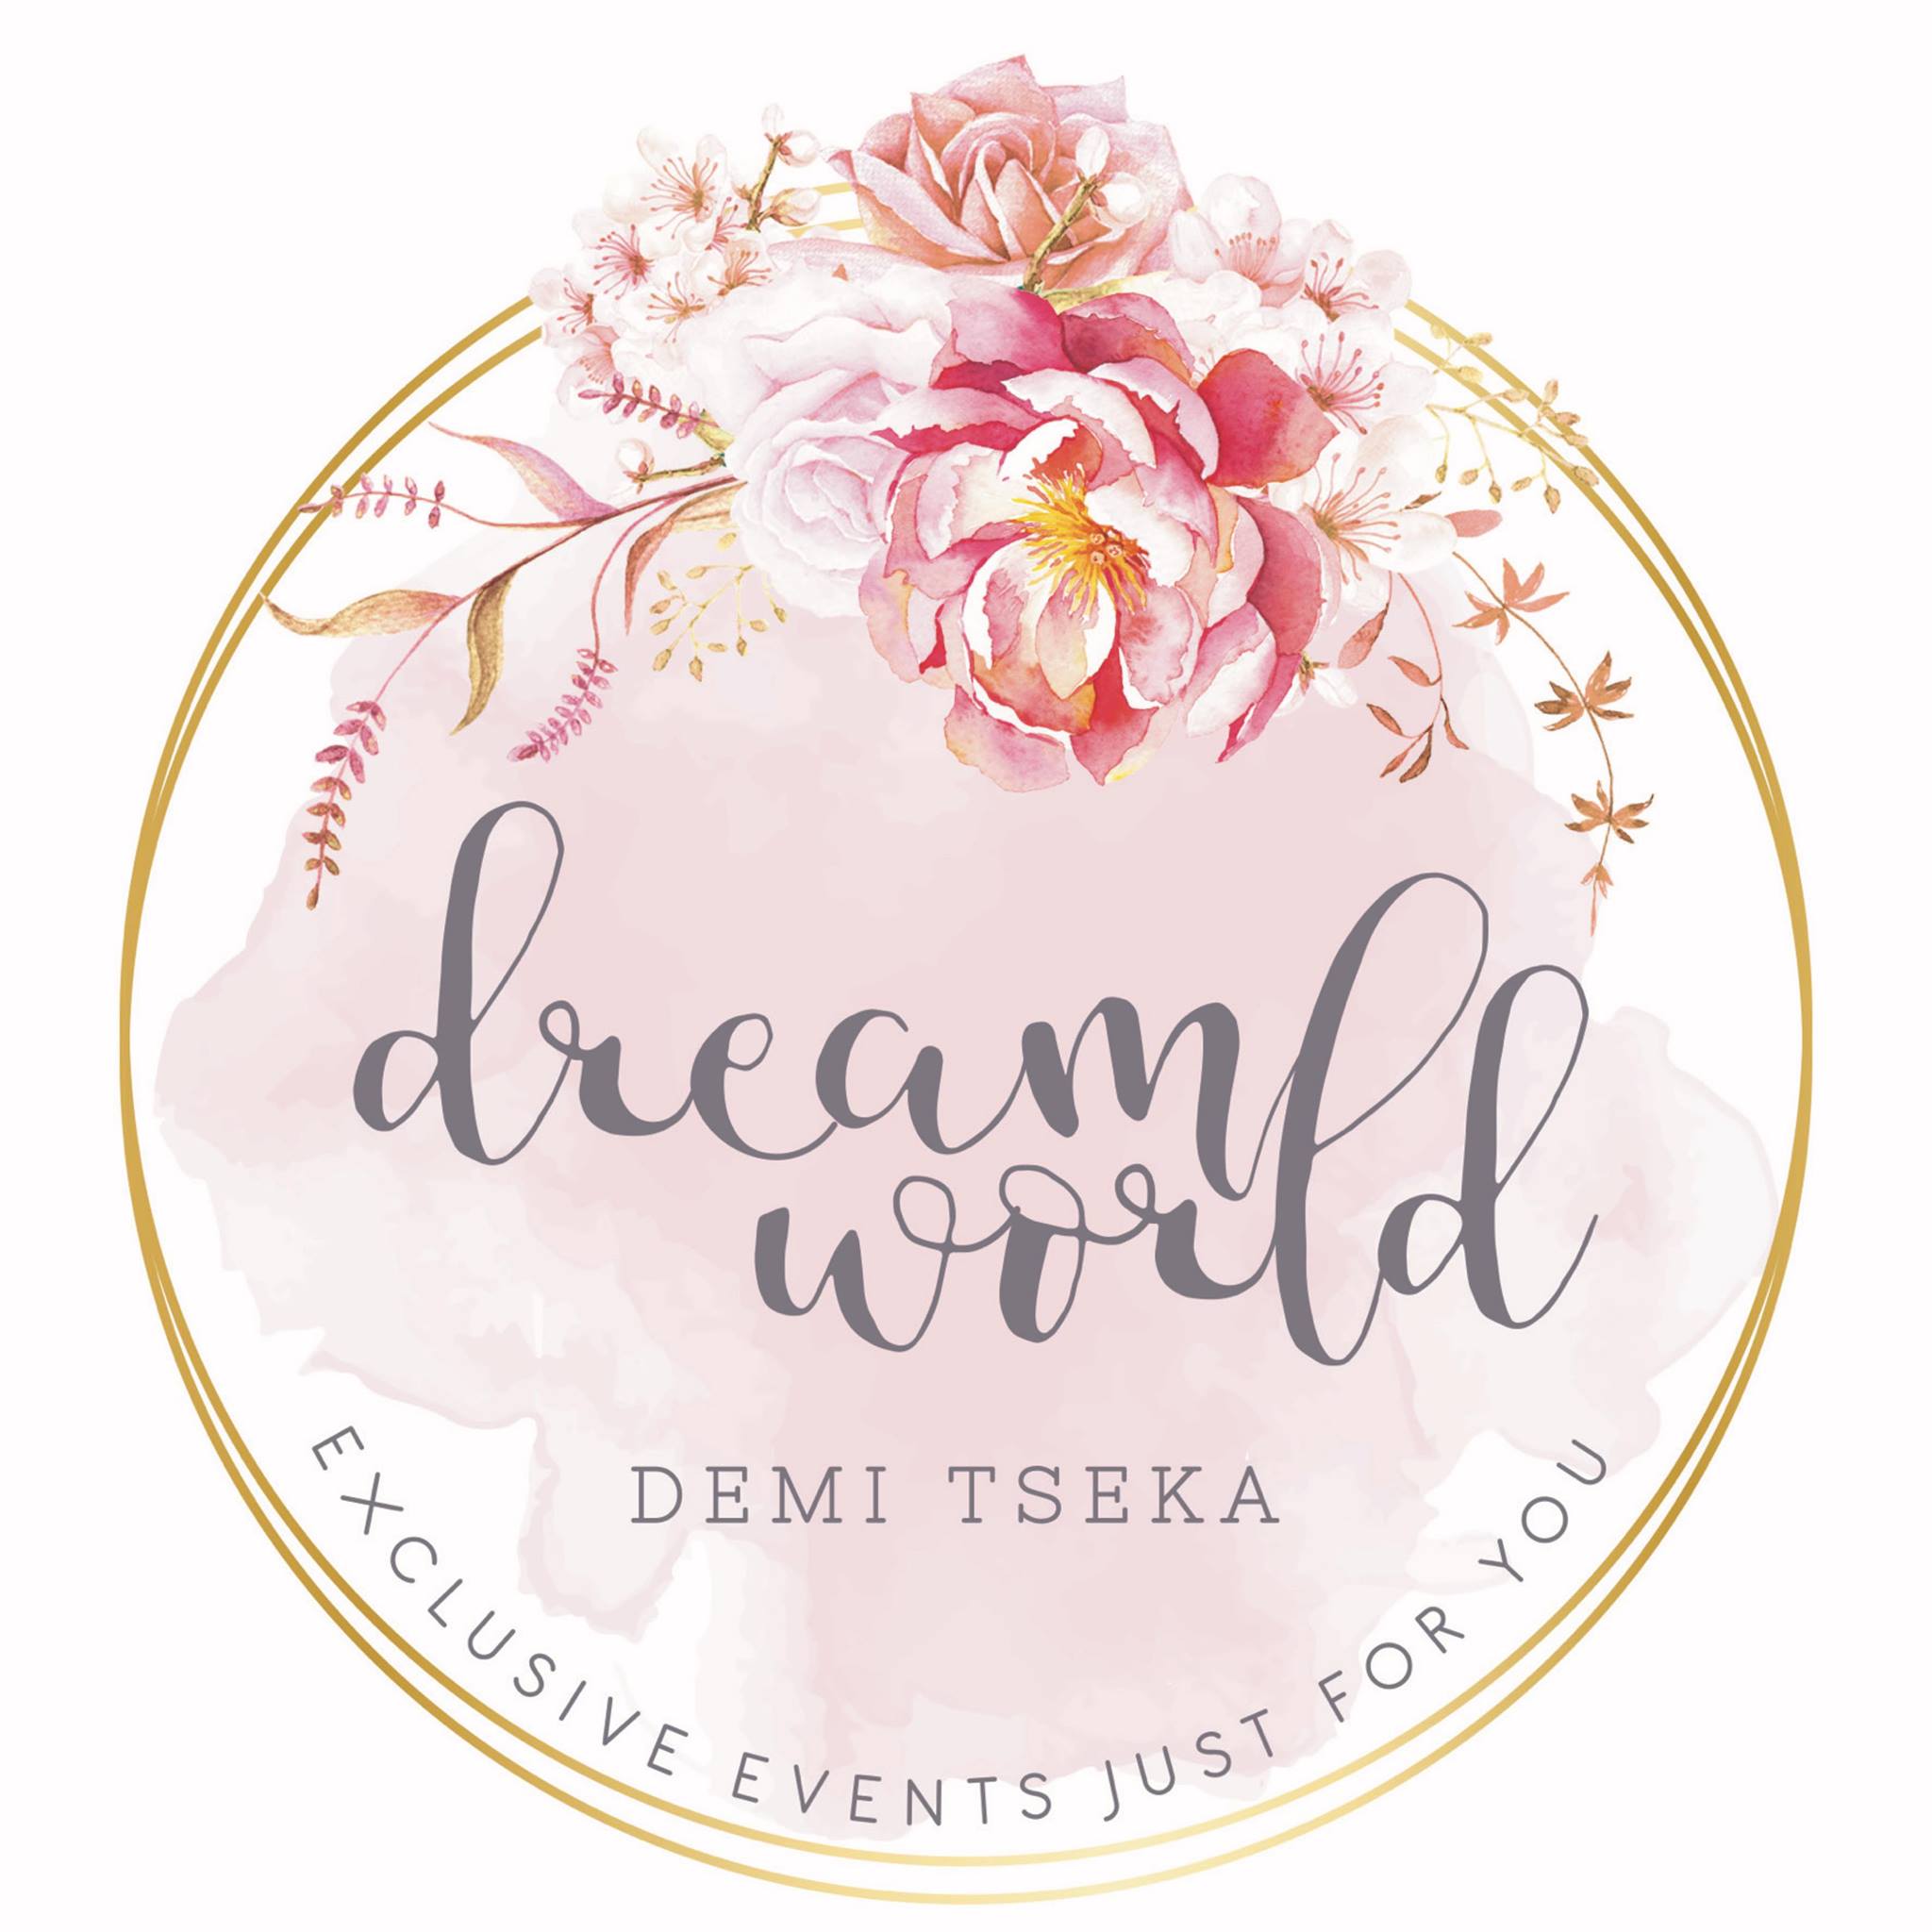  "DREAMWORLD Demi Tseka"